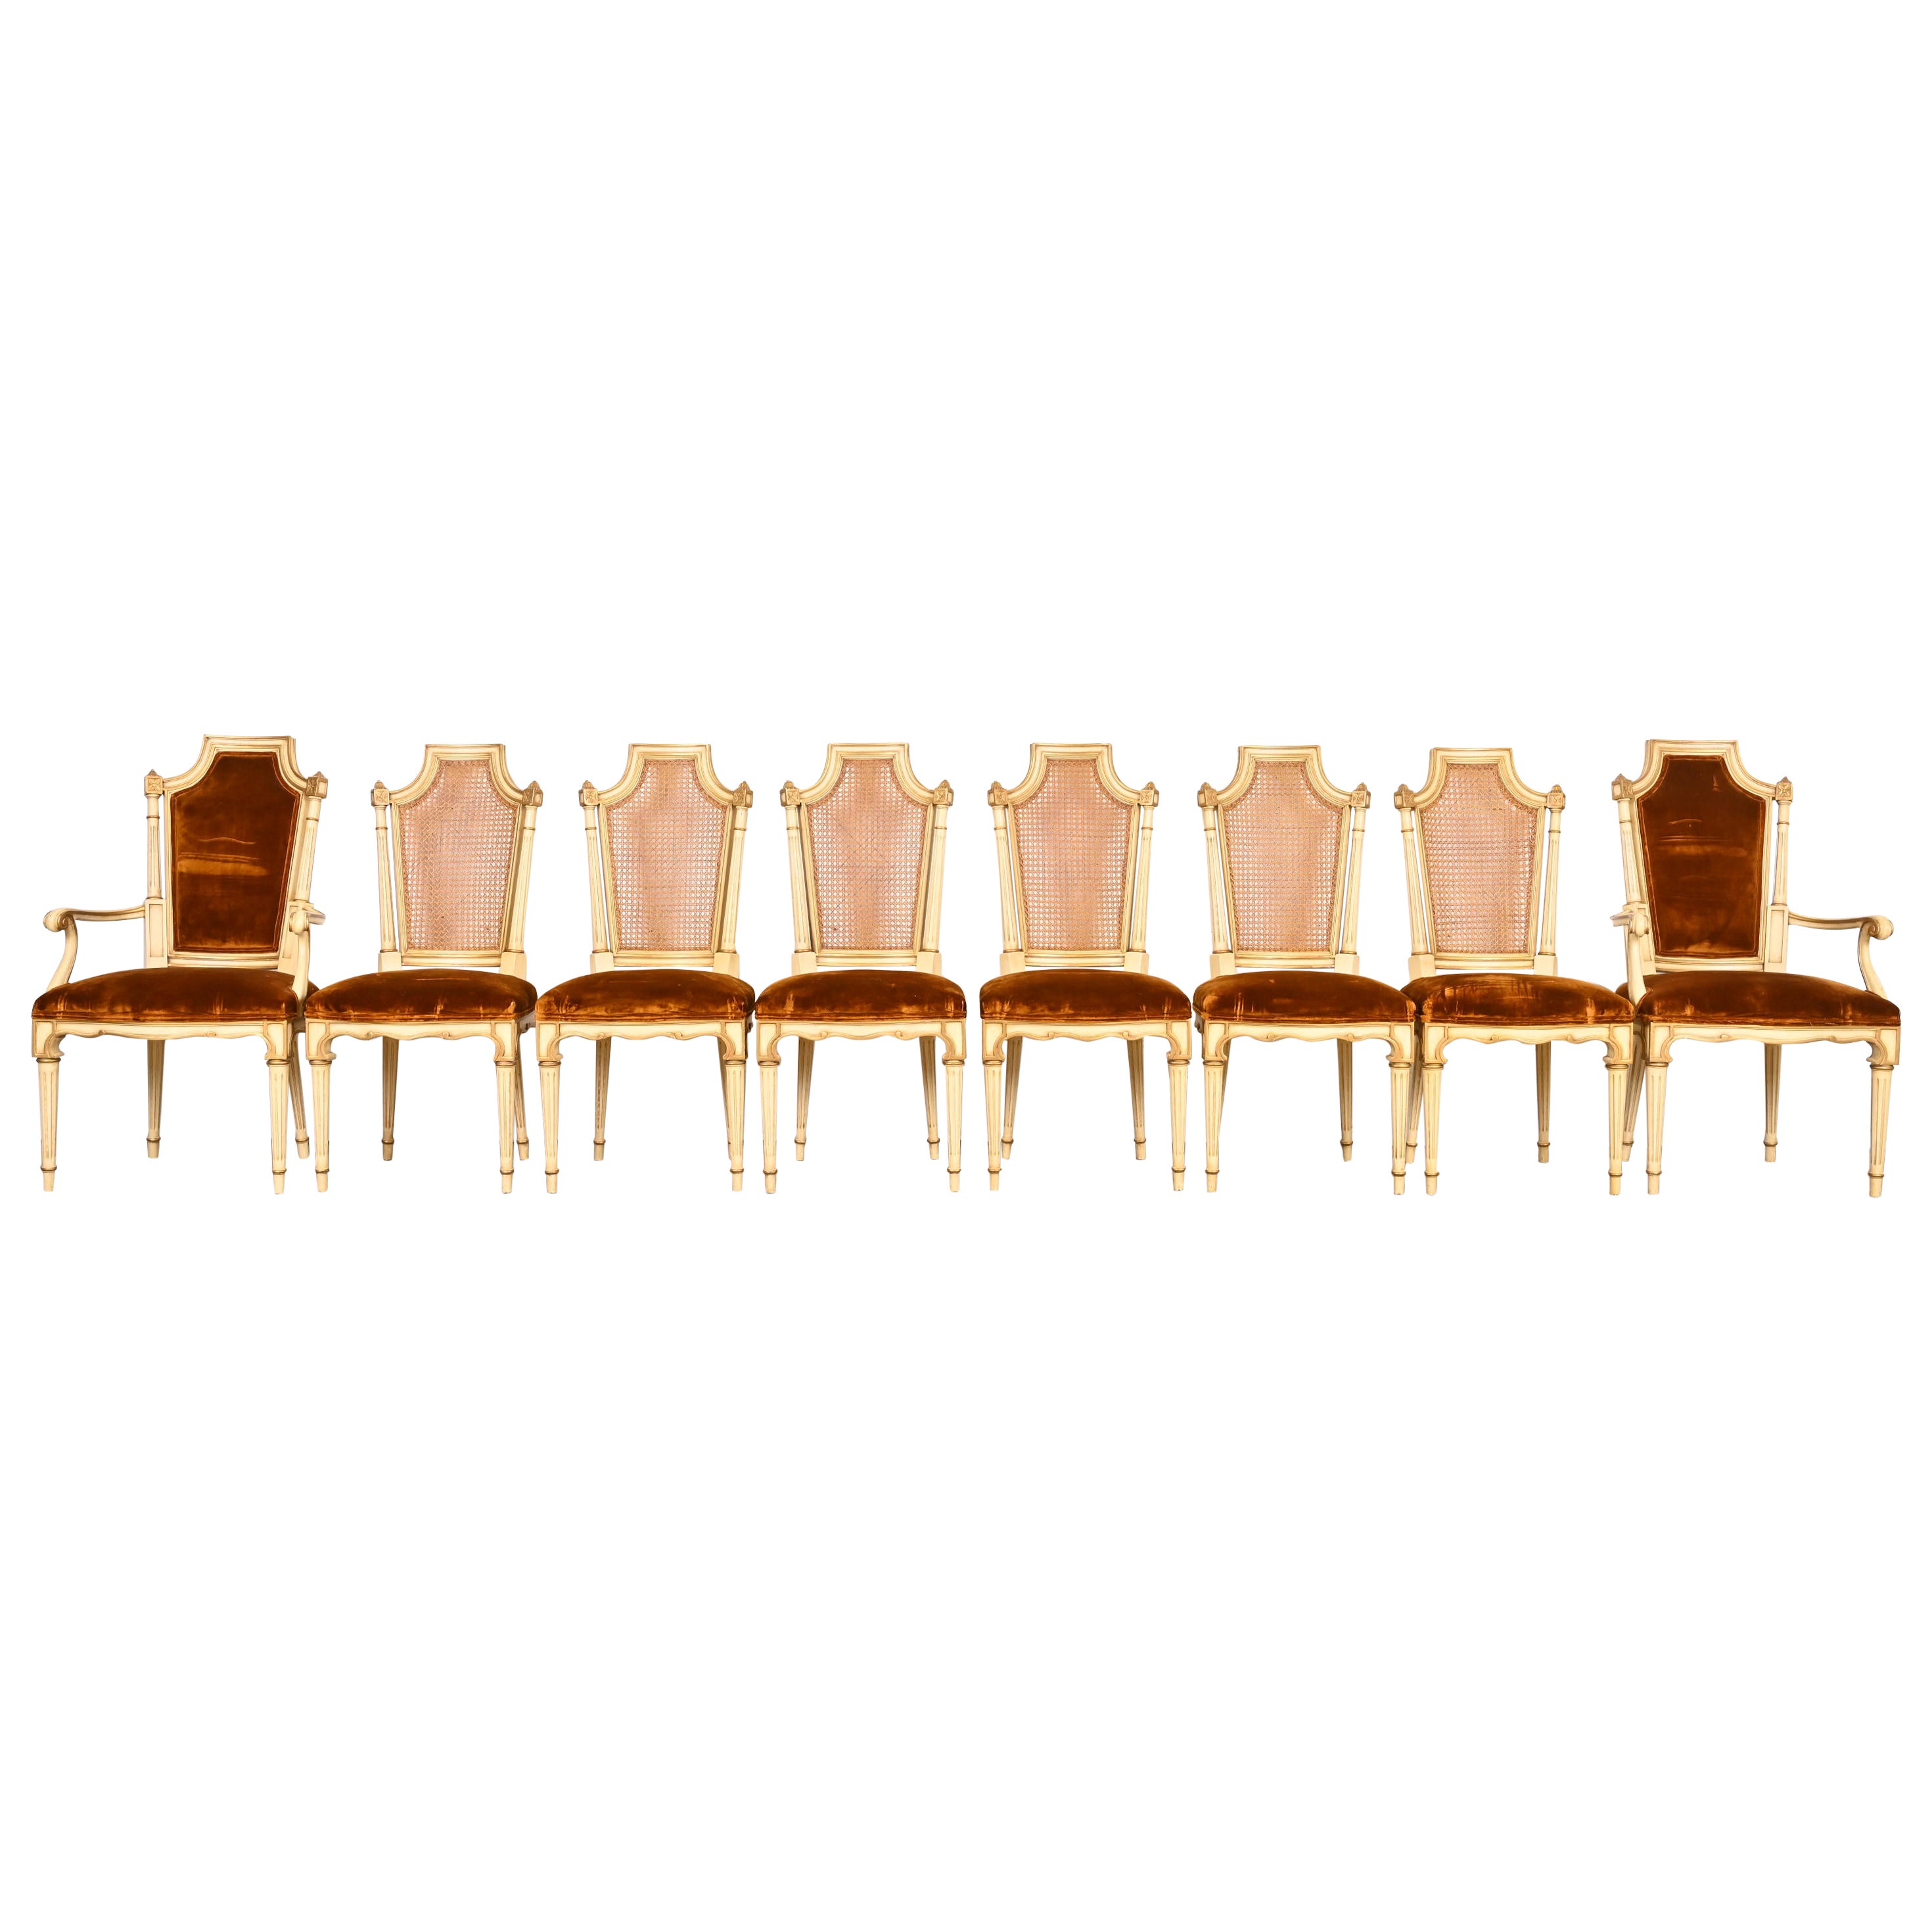 Huit chaises de salle à manger Régence française Karges Louis XVI peintes en crème et dorées à l'or